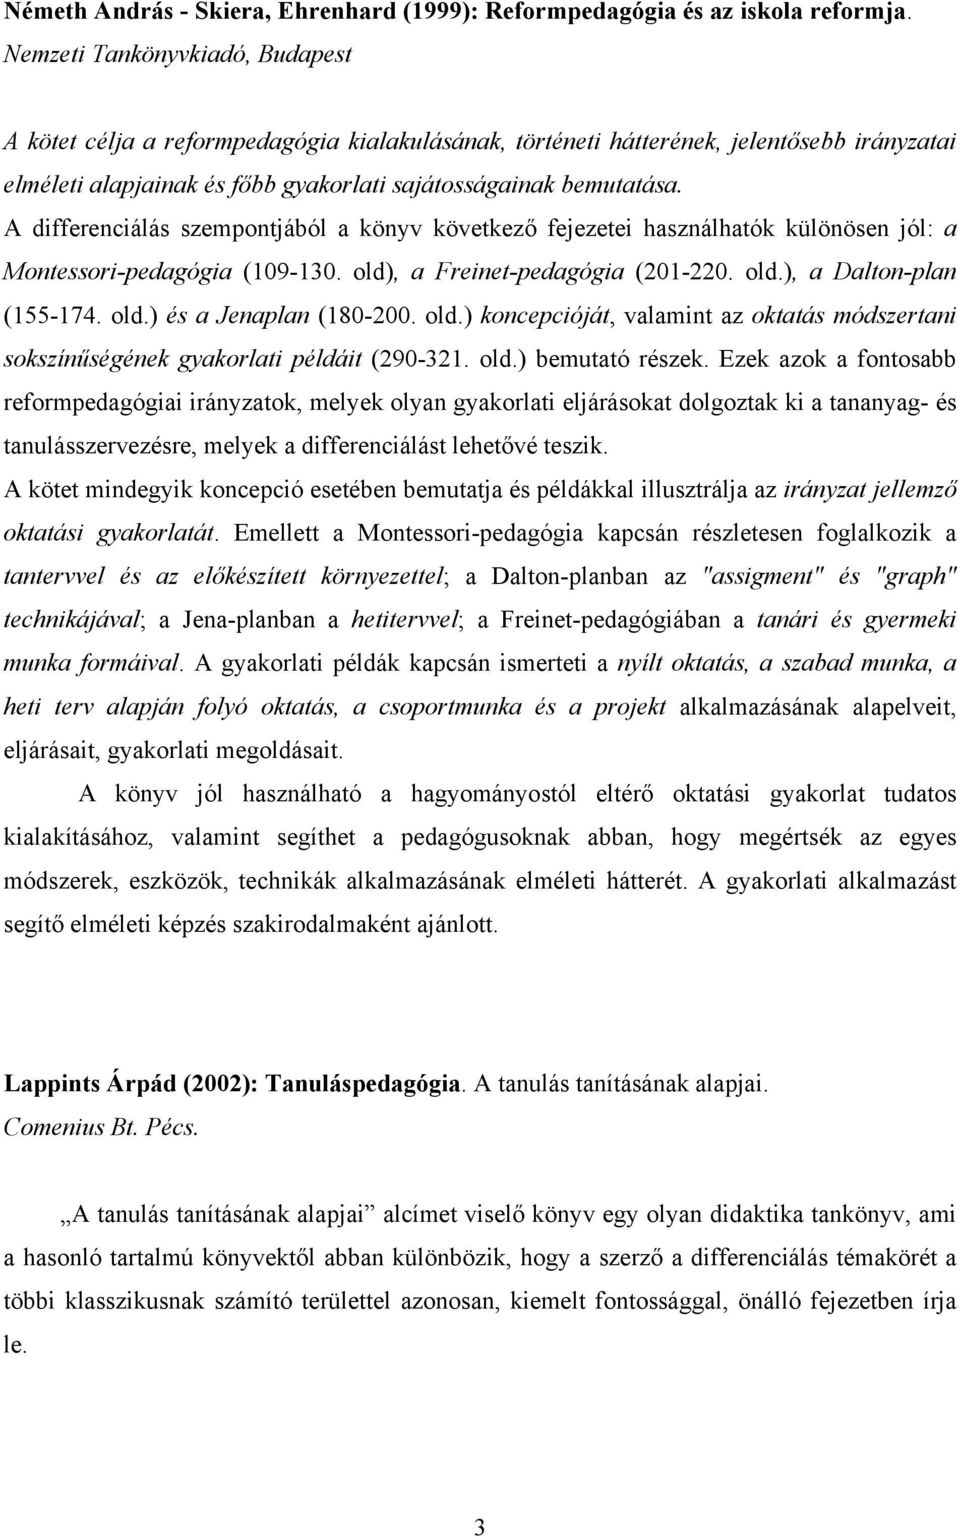 A differenciálás szempontjából a könyv következő fejezetei használhatók különösen jól: a Montessori-pedagógia (109-130. old), a Freinet-pedagógia (201-220. old.), a Dalton-plan (155-174. old.) és a Jenaplan (180-200.